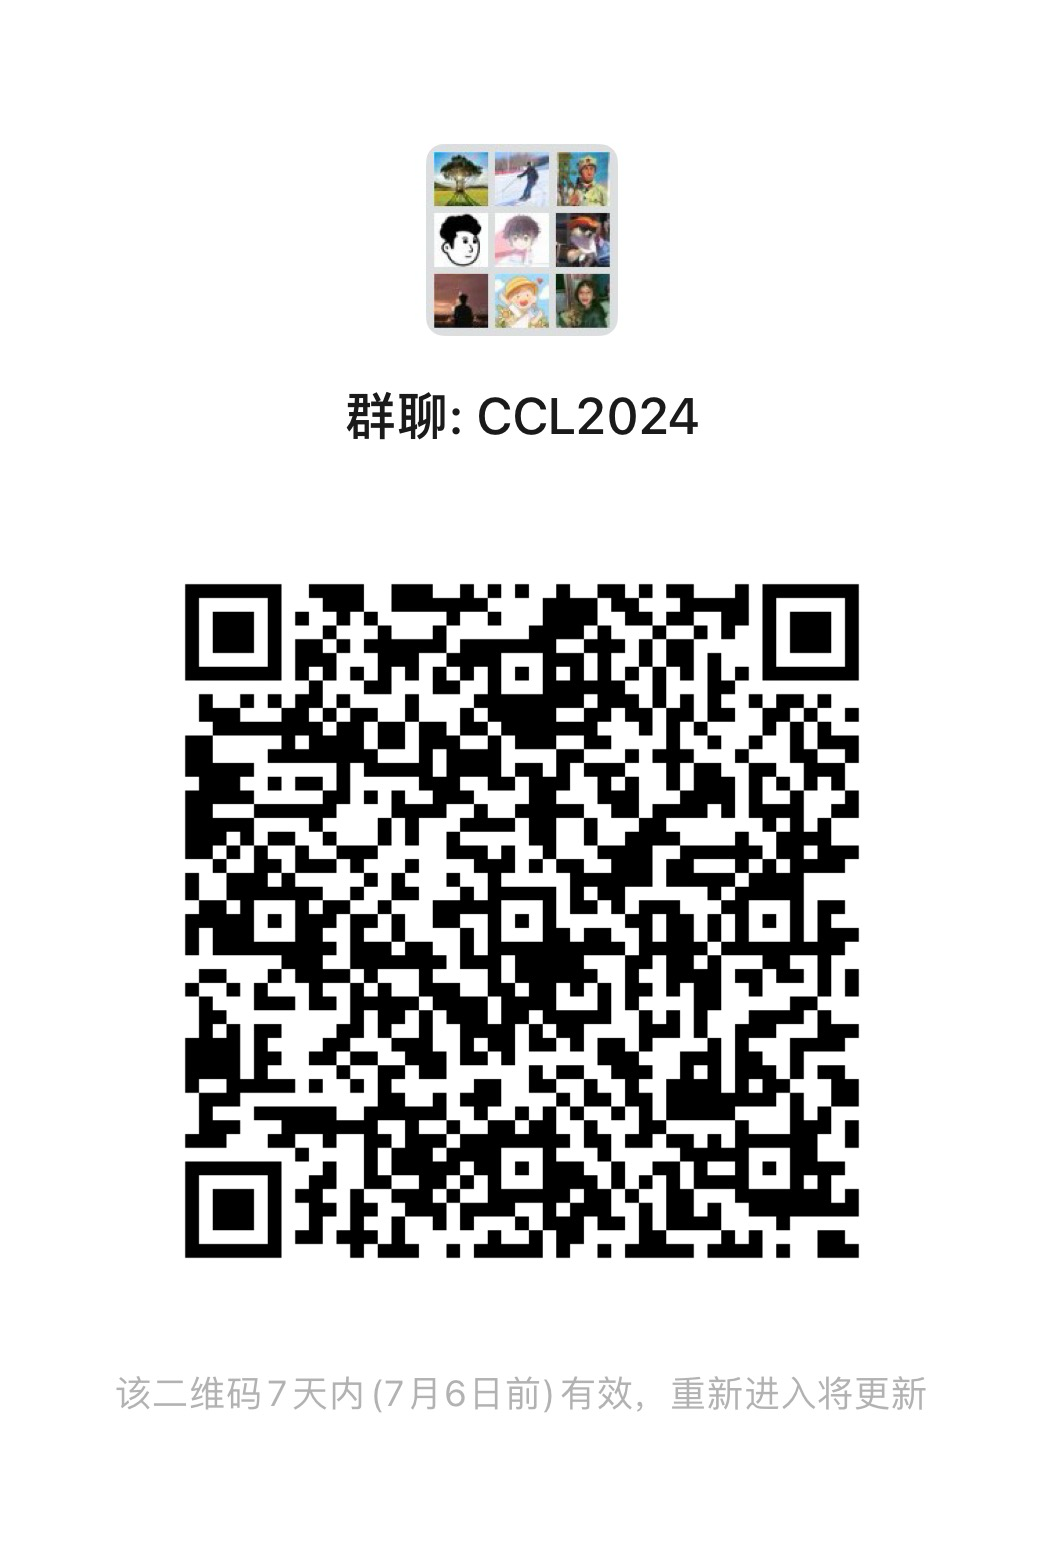 CCL2024 participants group (WeChat)